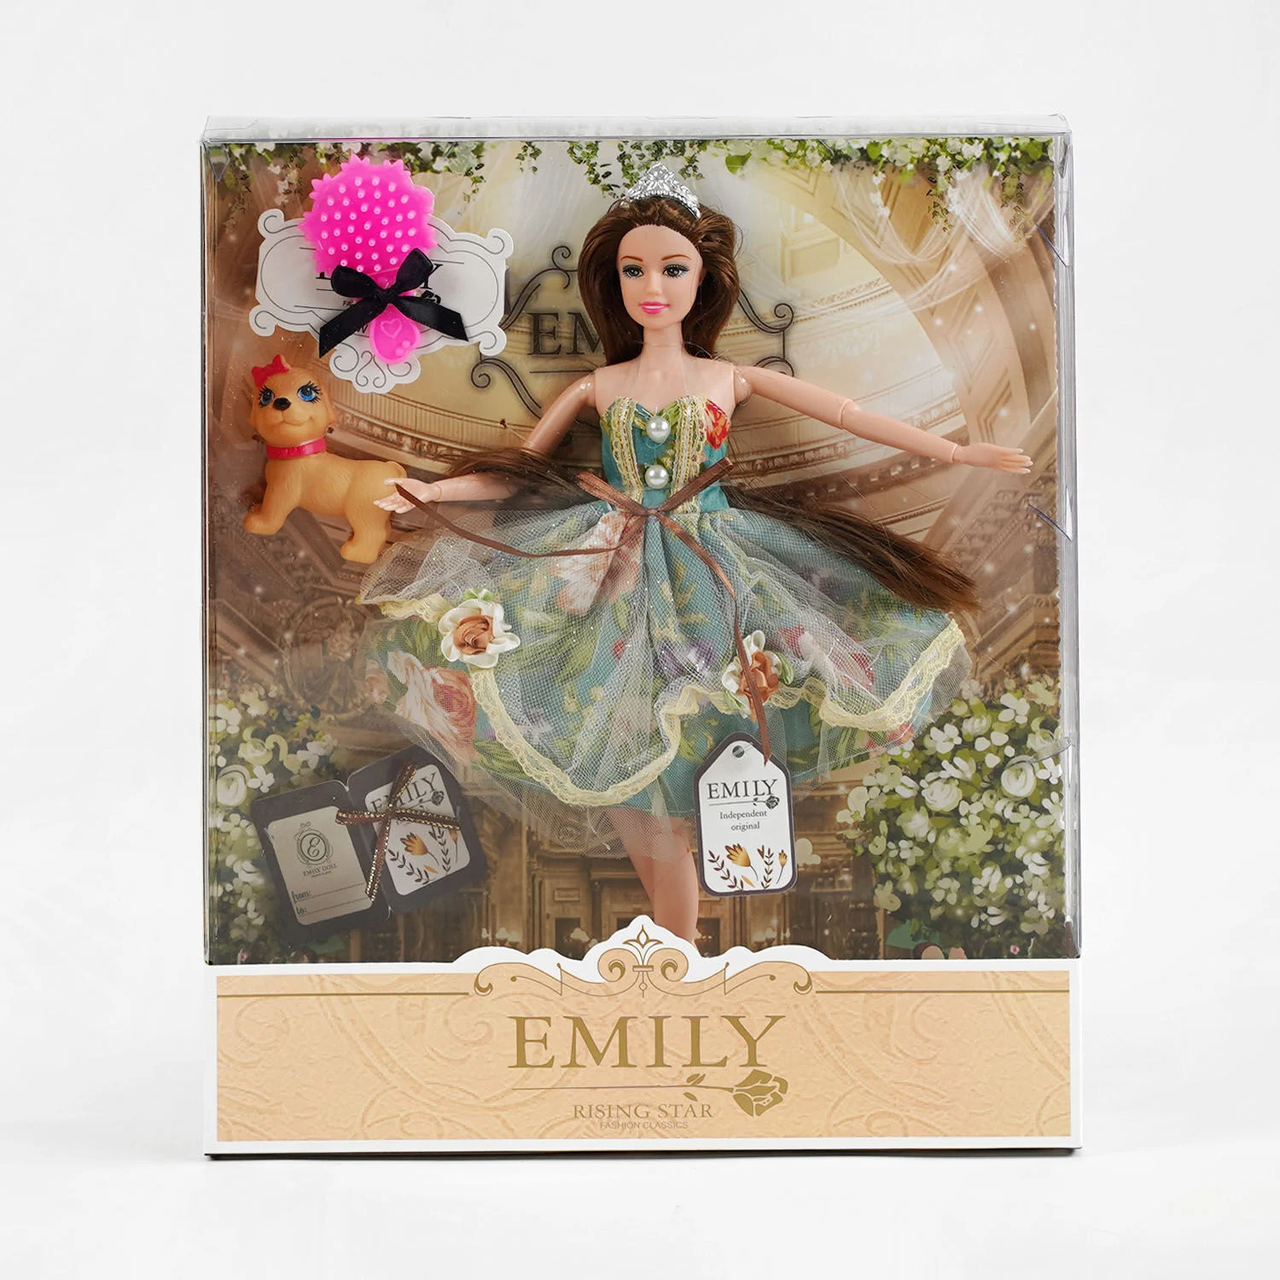 Лялька Emily шарнірна з аксесуарами, Лялька QJ 078 B аксесуари, улюбленець, у коробці, Дитяча шарнірна лялька